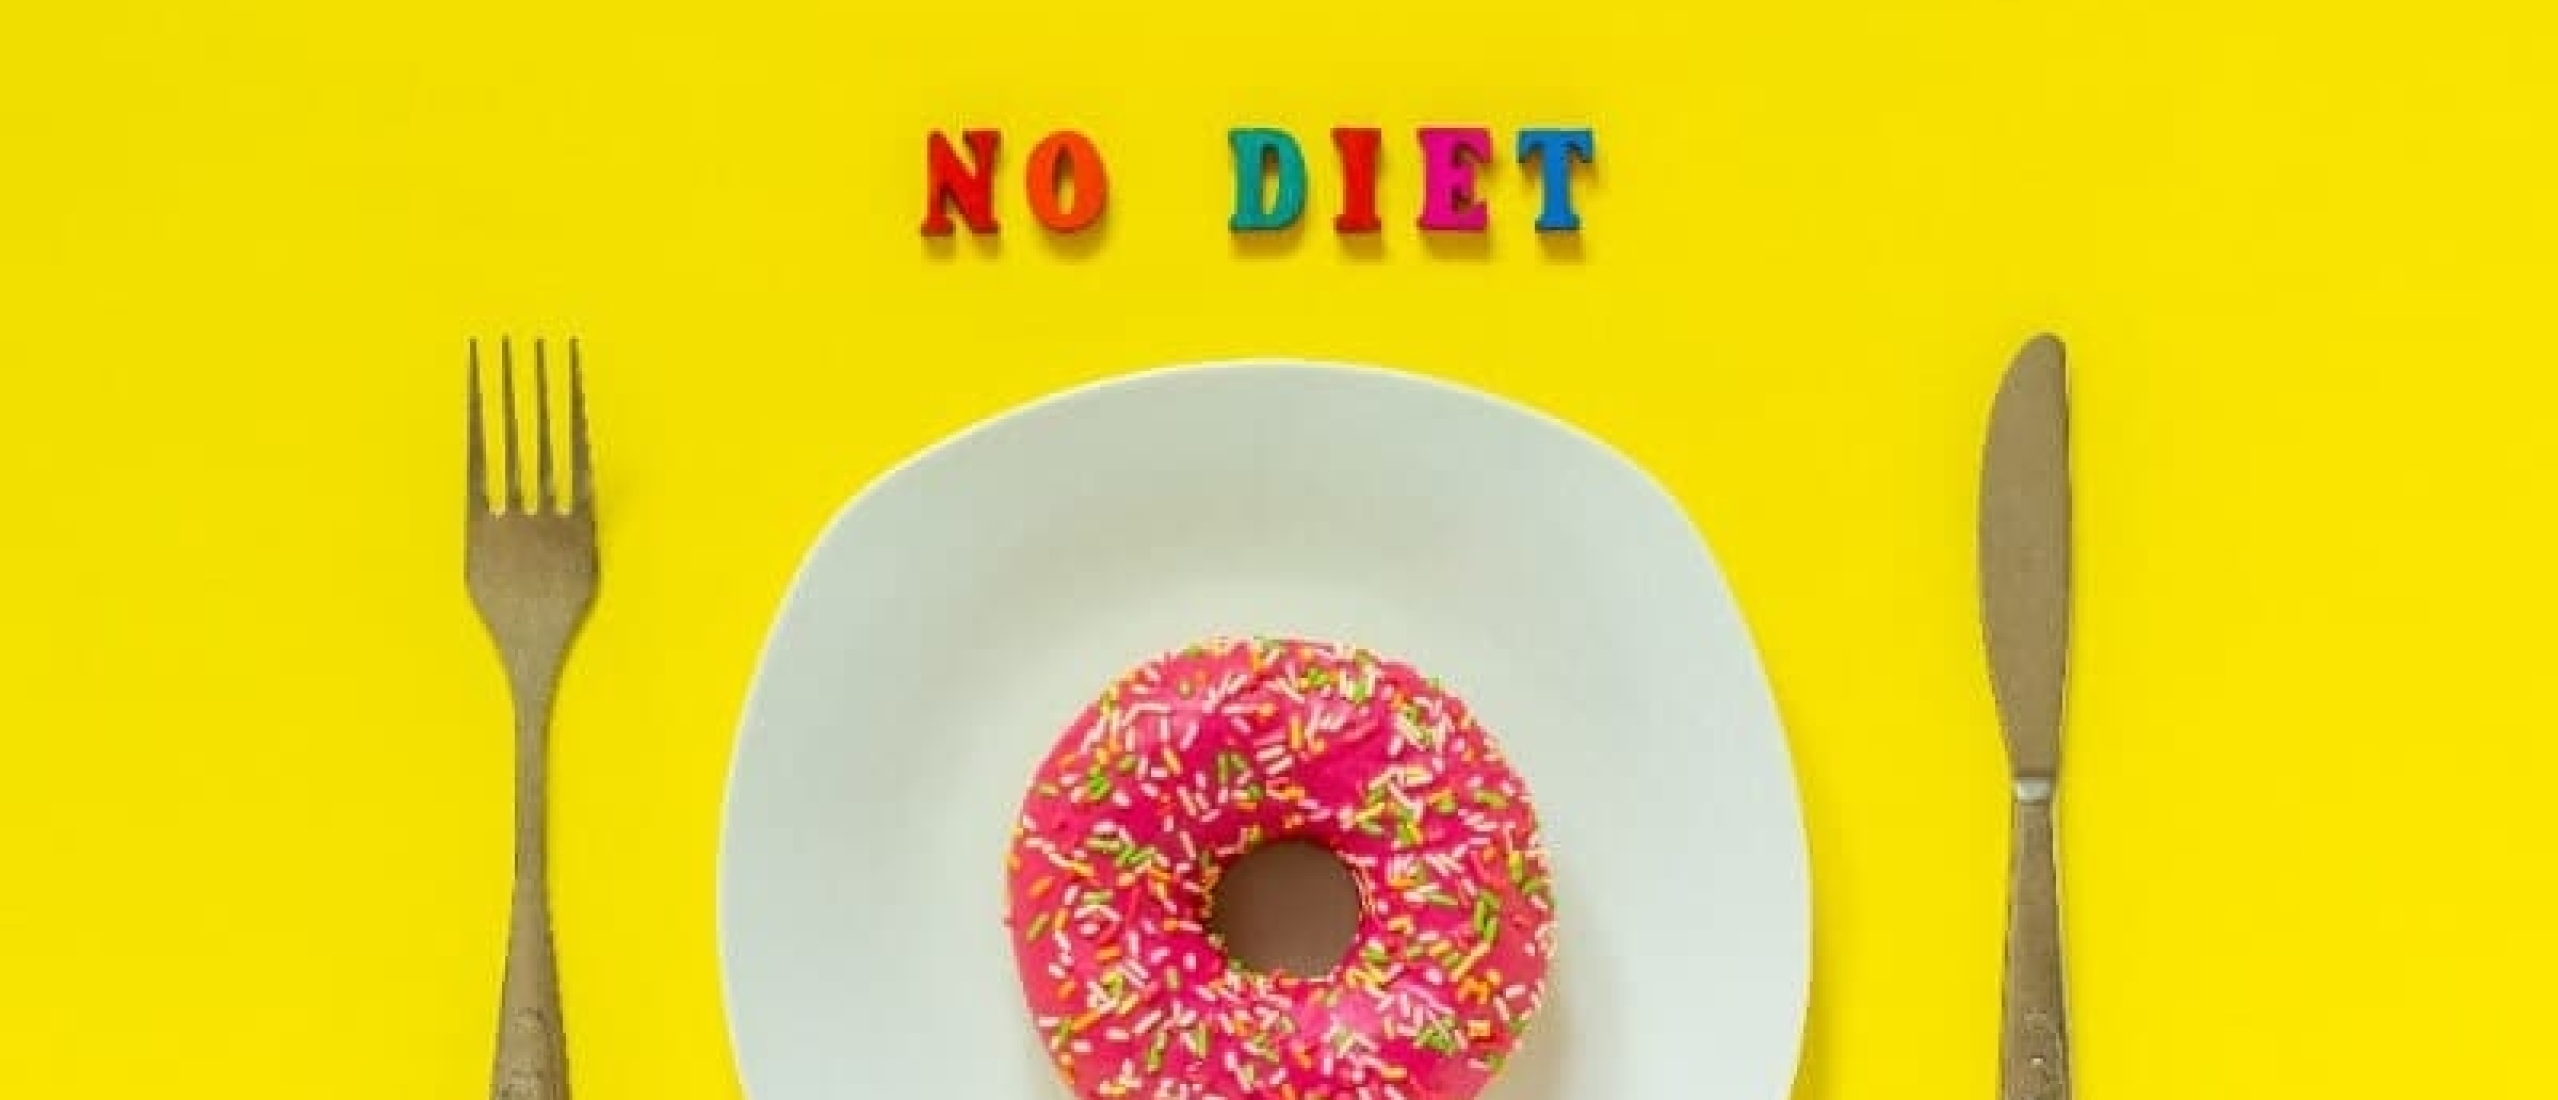 Afvallen zonder dieet: 9 tips om intuïtiever te eten